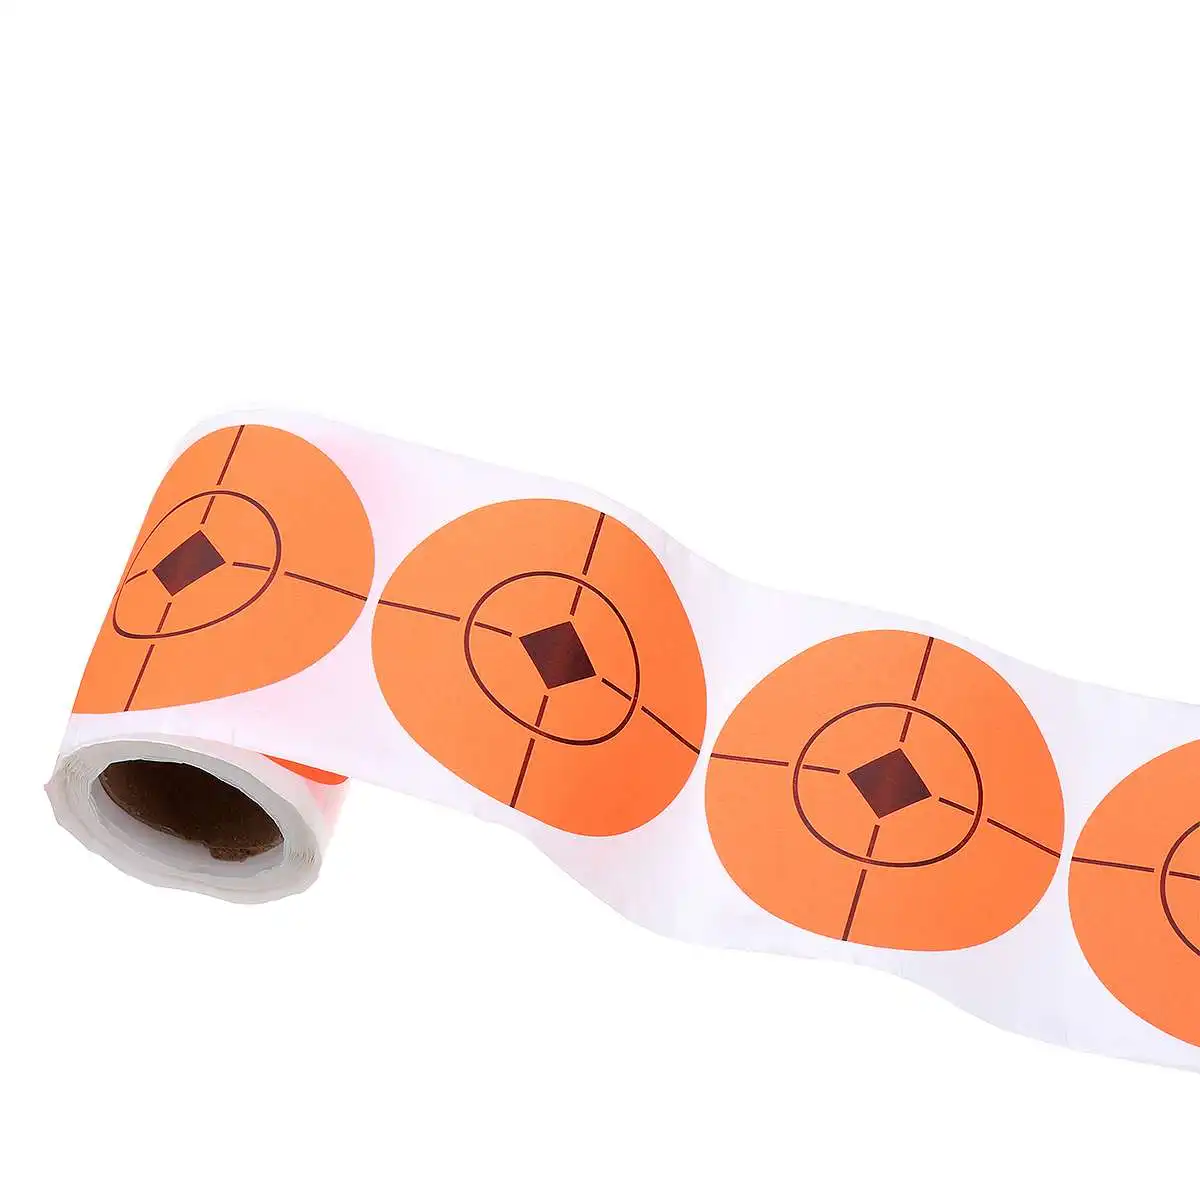 100 шт. 7,5 см диаметр стрельбы клейкие цели реактивной цели наклейка для стрельба из лука, охота с луком практика стрельбы